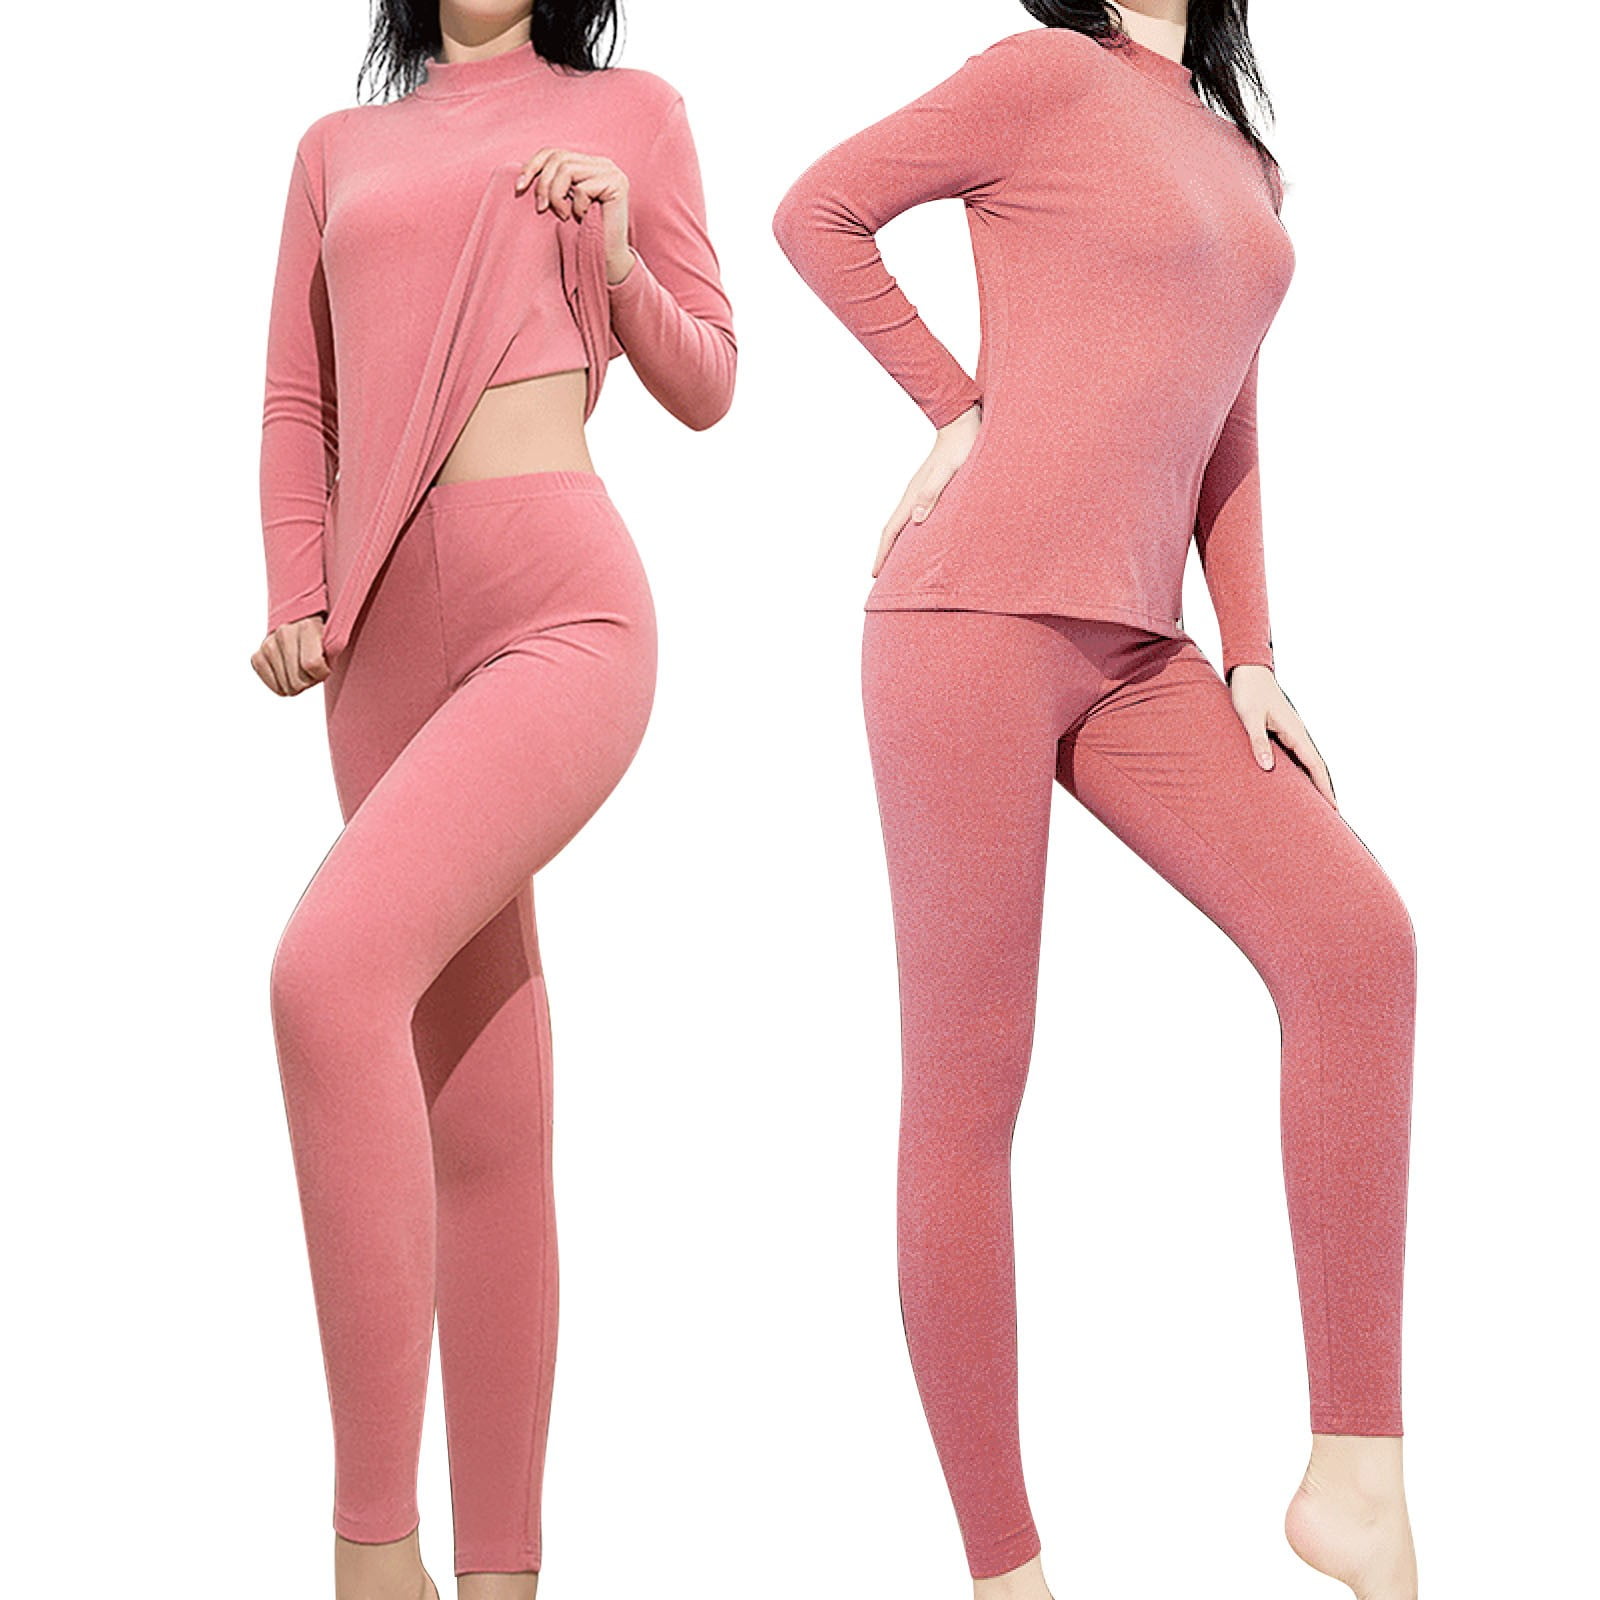 Limei 2Pcs Women's Thermal Underwear Set, Cotton Long Johns Lightweight Top  & Bottom 